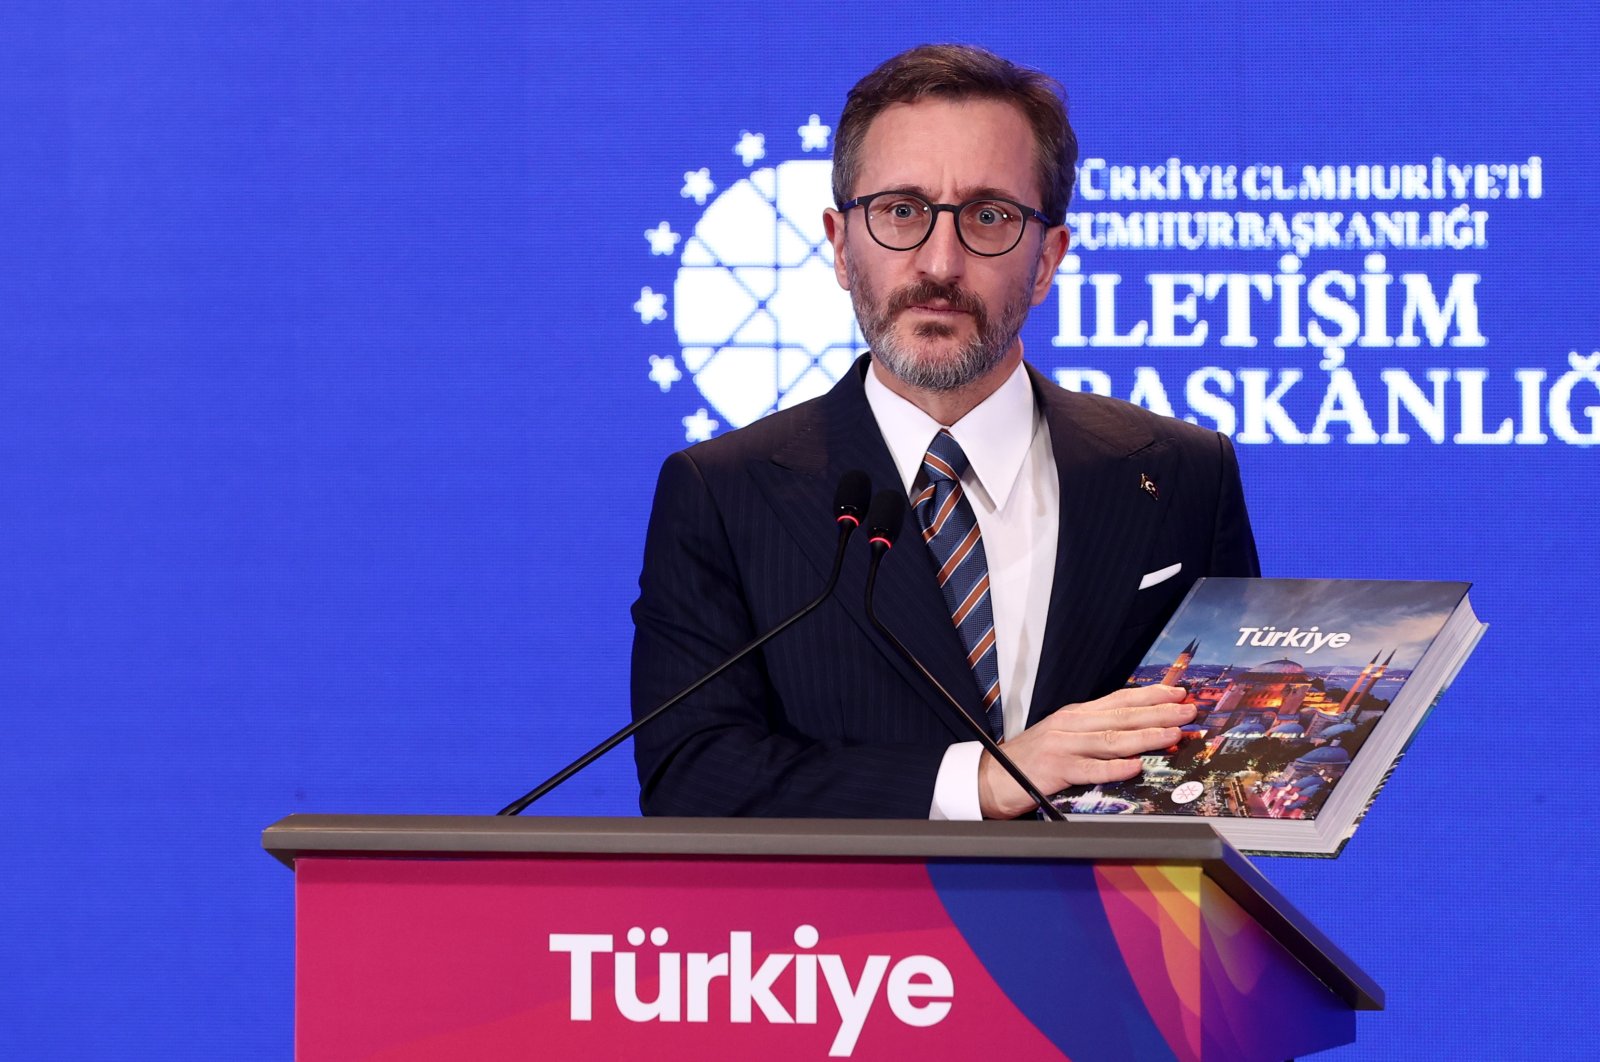 ‘Buku Türkiye’ untuk mempromosikan nama negara, visi di seluruh dunia: Altun